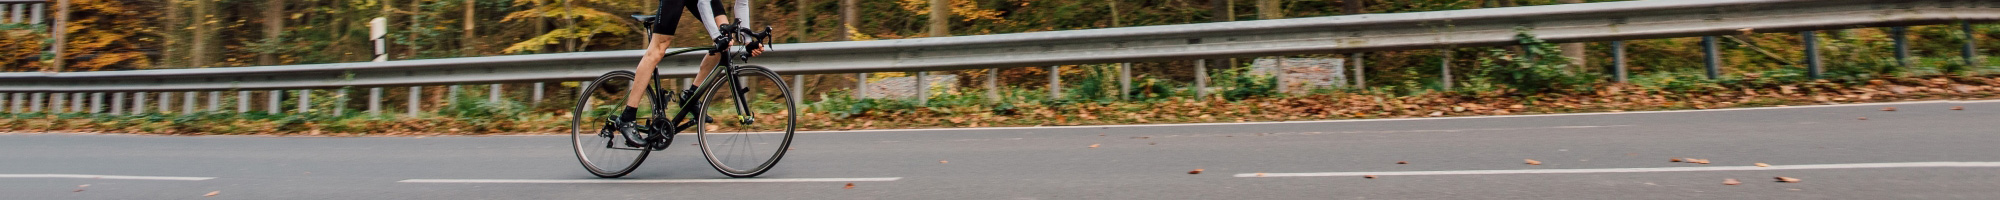 【ロードバイク】ツールドフランスを走る選手の分厚い体幹と速さの秘密